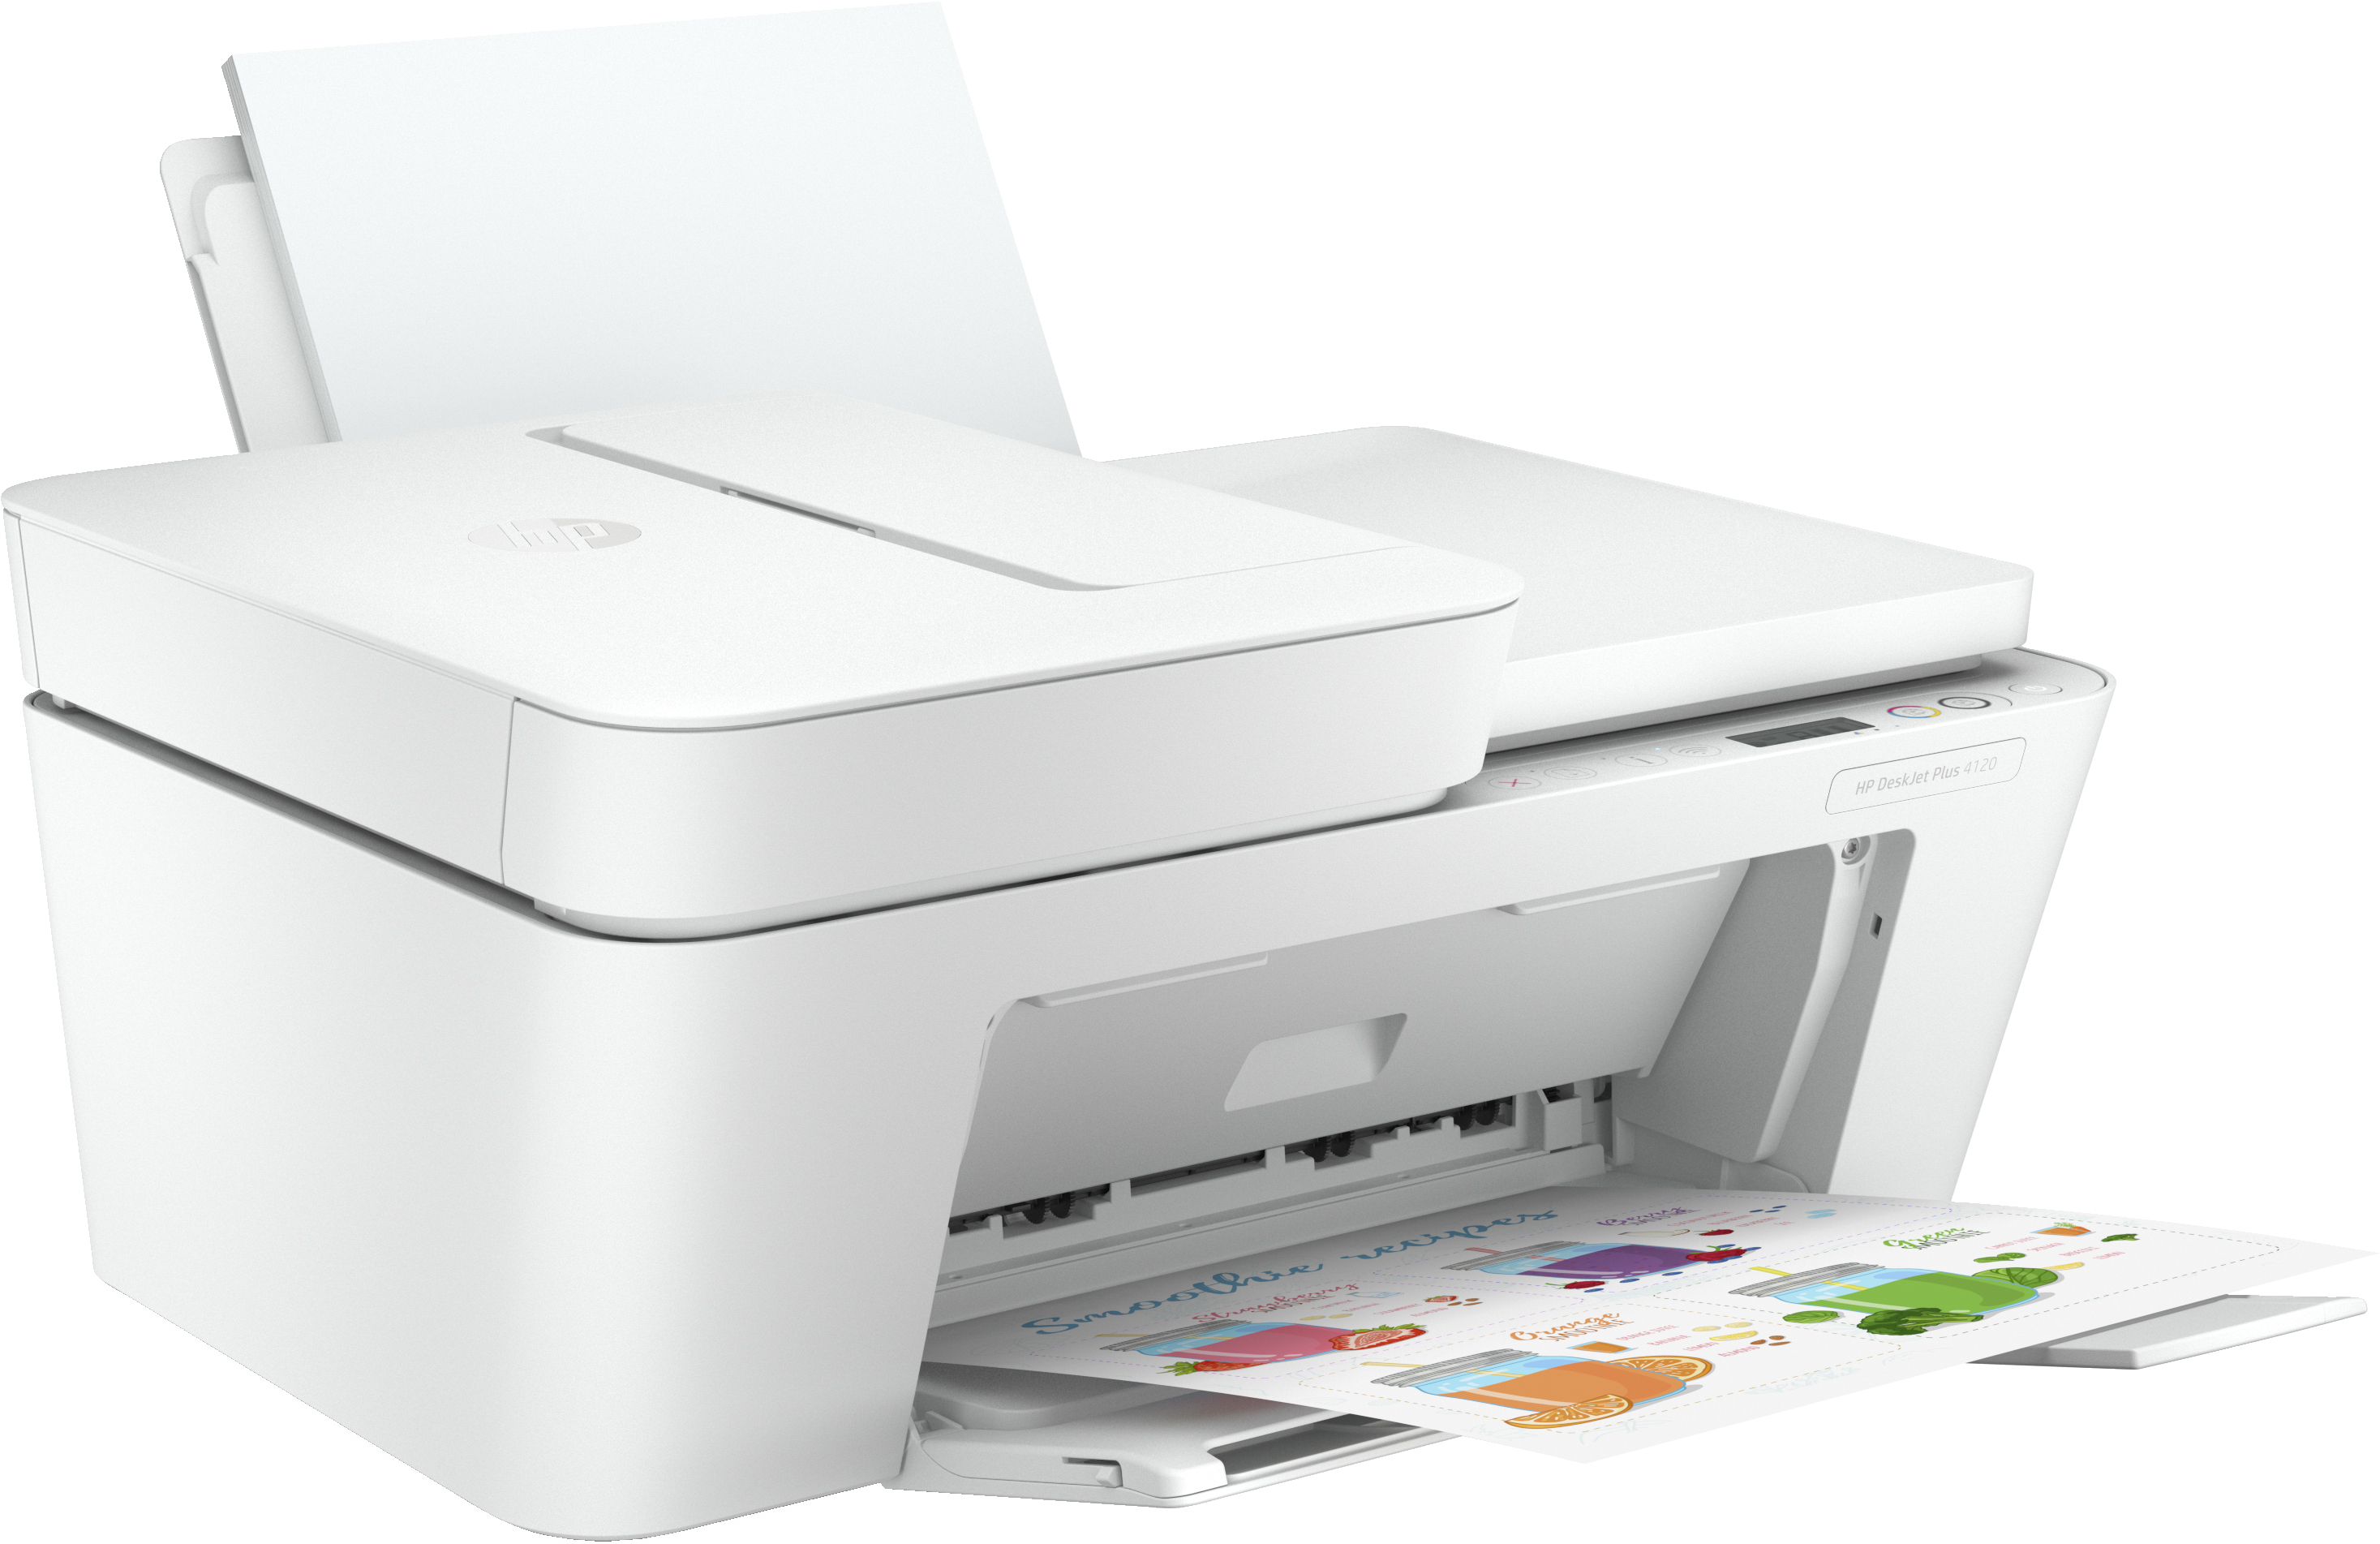 HP DeskJet Plus 4120 All-in-One - Multifunktionsdrucker - Farbe - Tintenstrahl - A4 (210 x 297 mm)